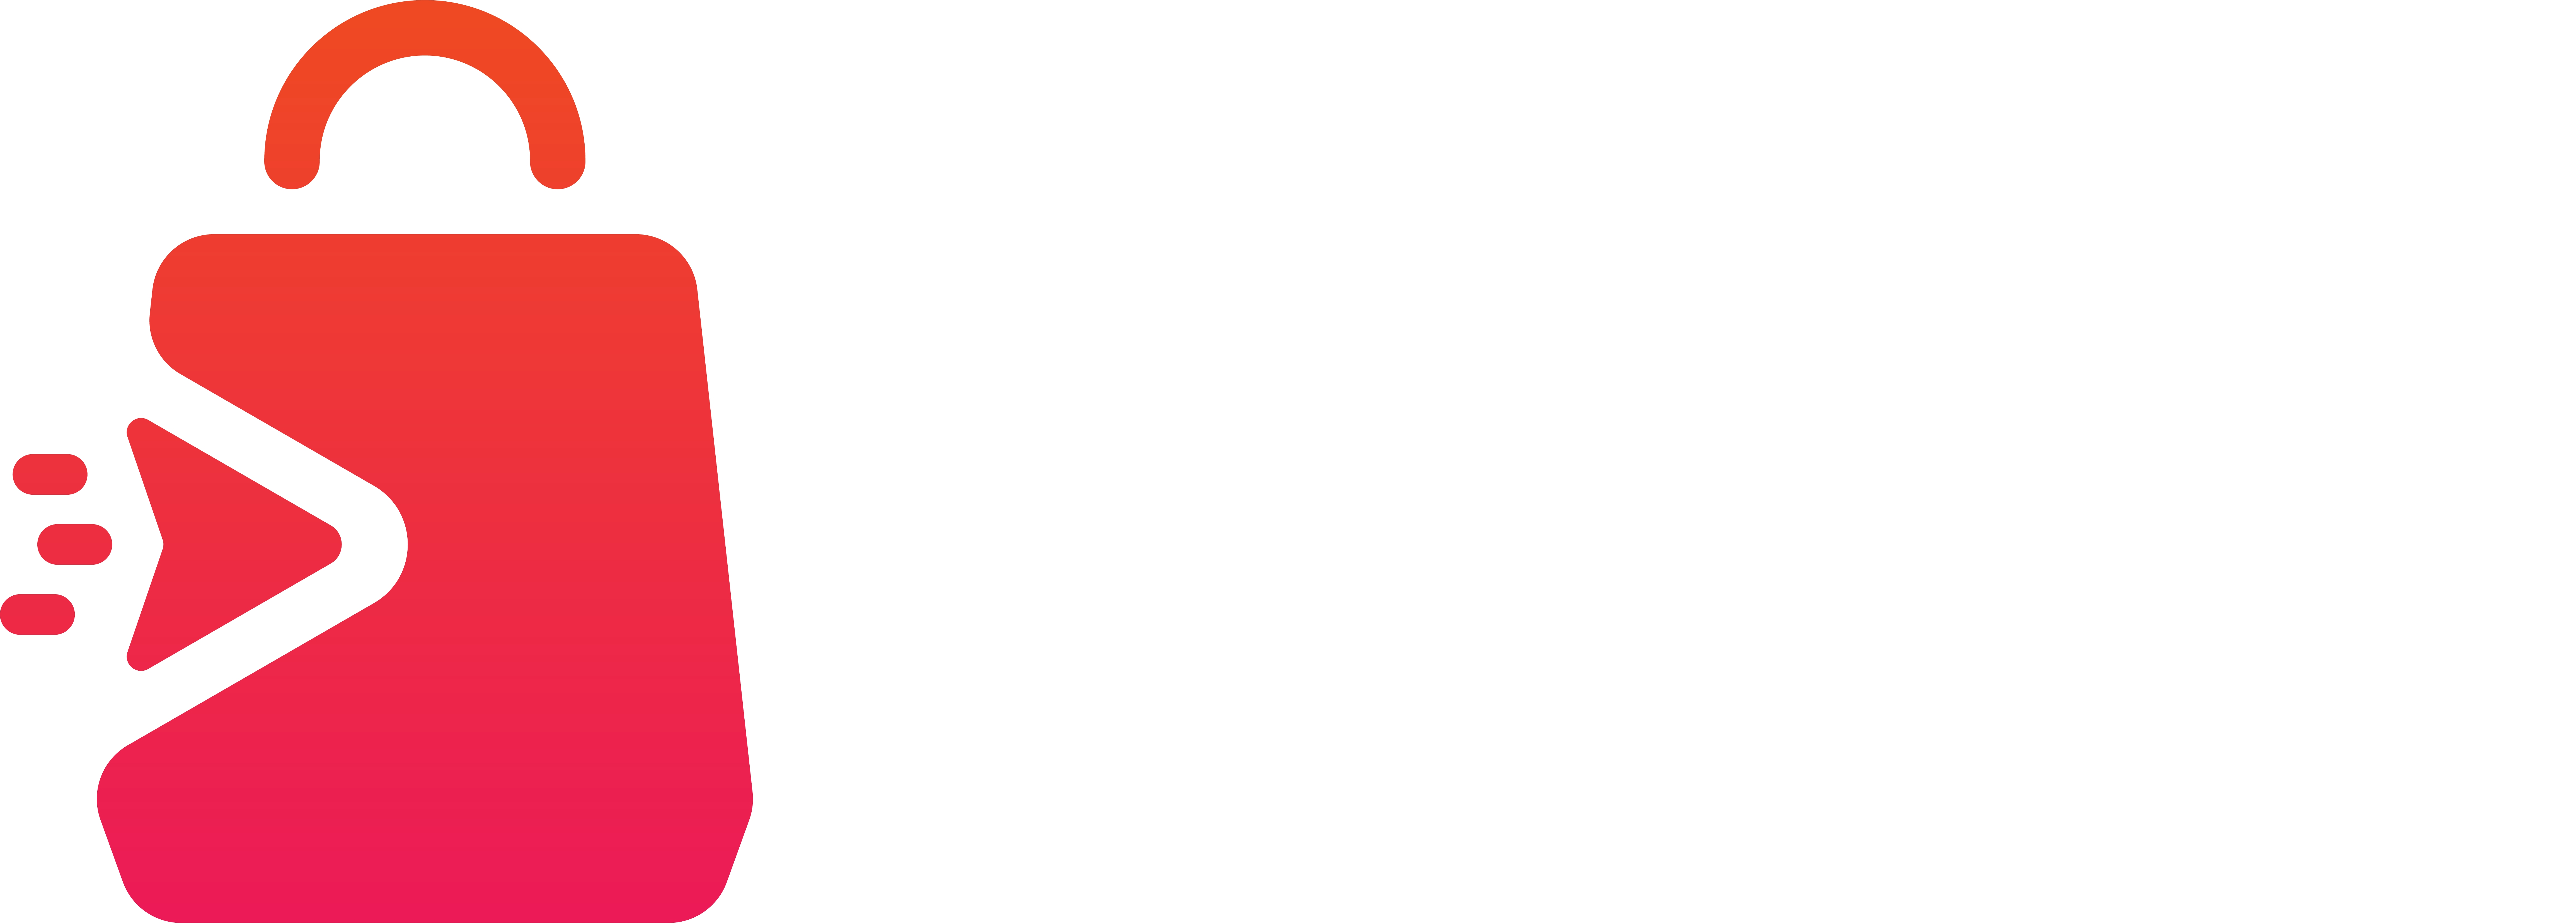 BigStore